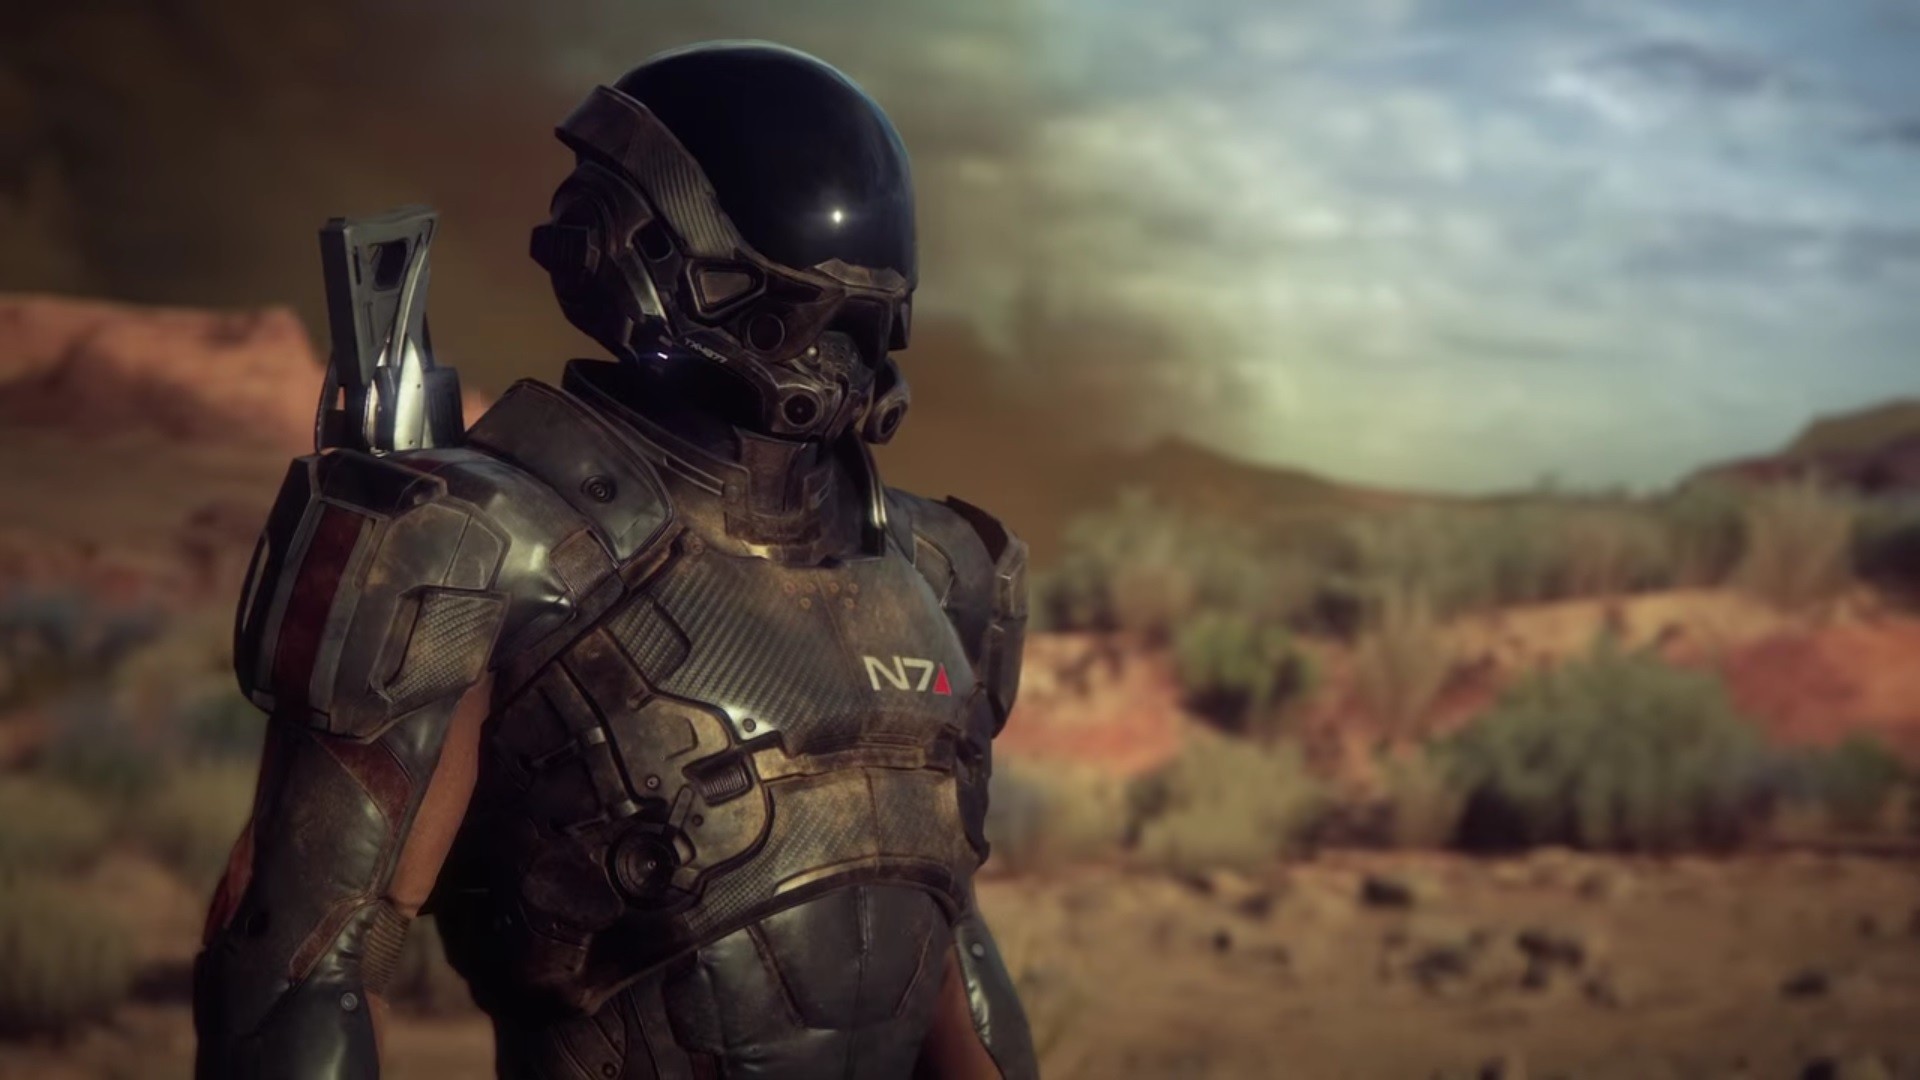 Mass Effect: Andromeda, Render, Mass Effect, Digital art, Science fiction, Video games Wallpaper